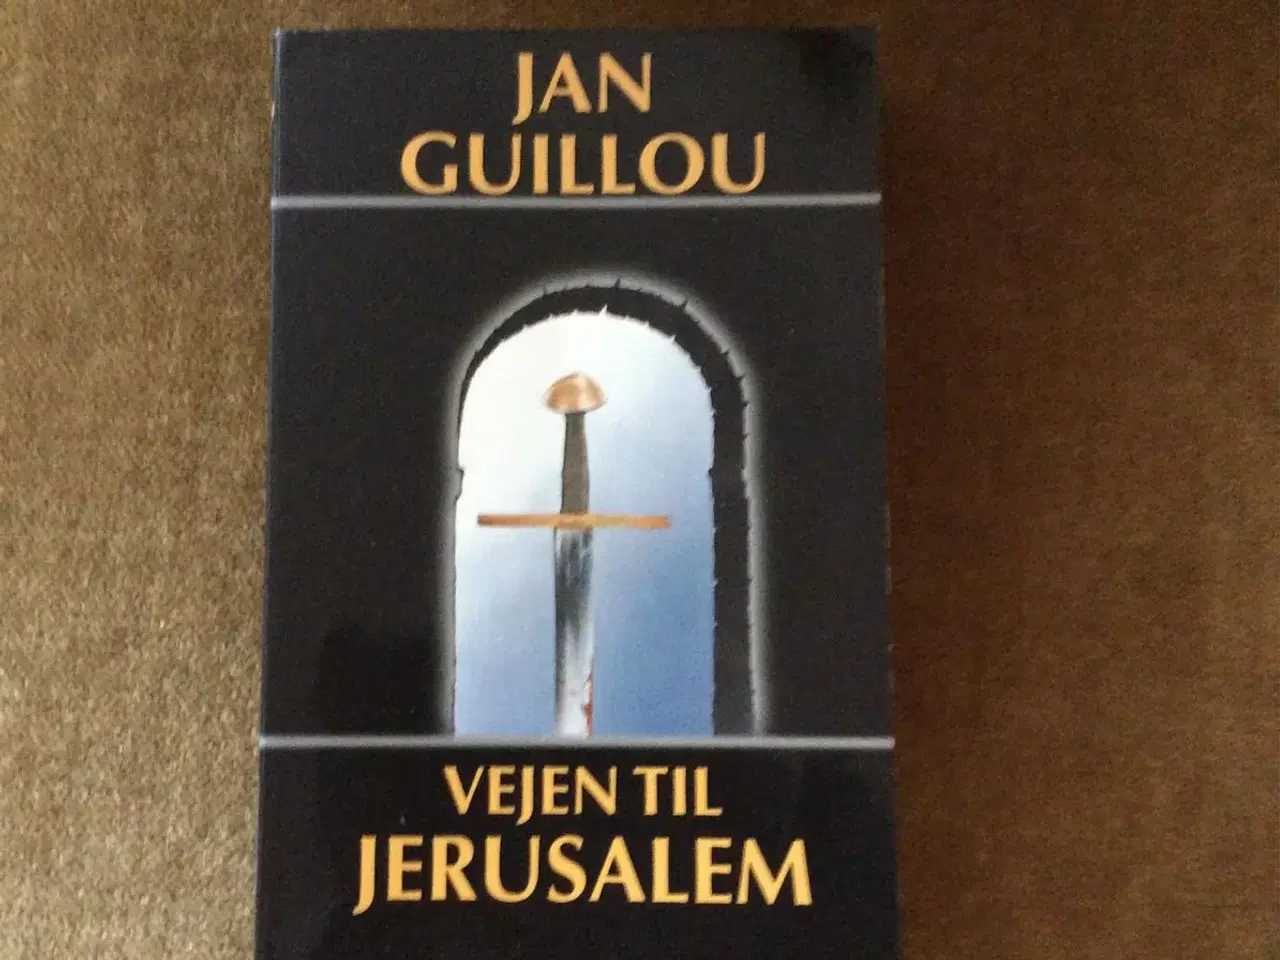 Billede 1 - Jan Guillou  vejen til Jerusalem